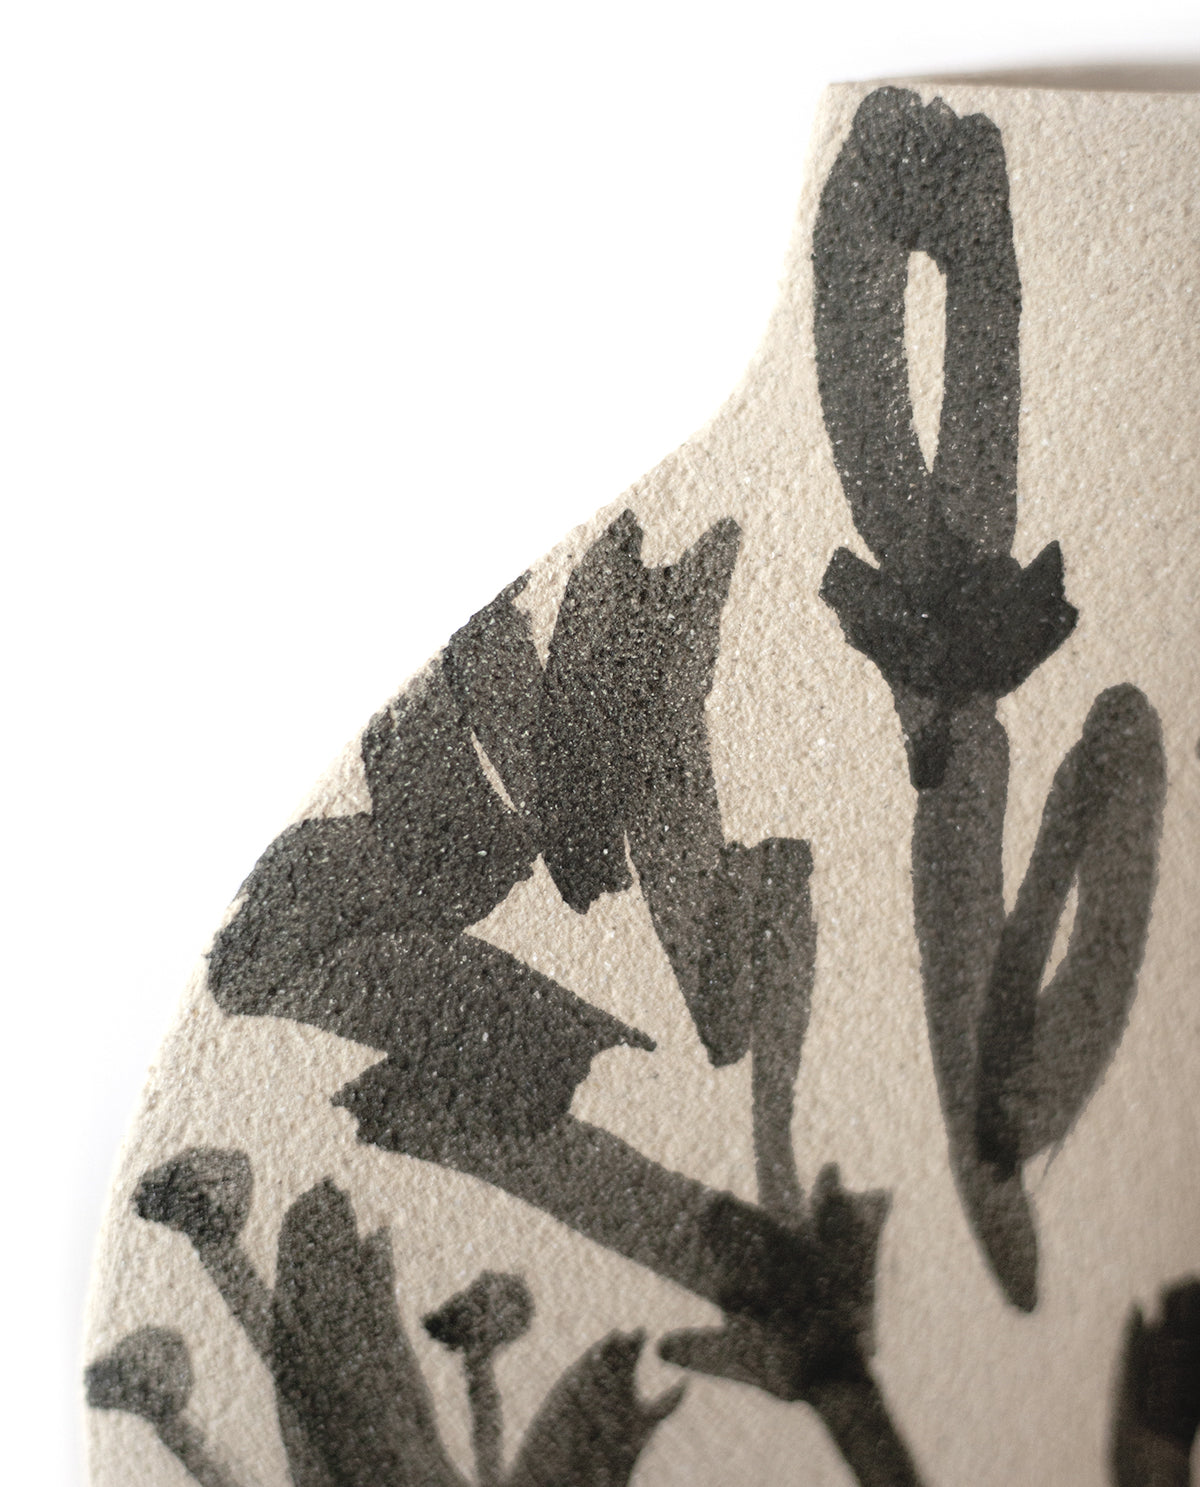 Ceramic Vase ‘Lilies’